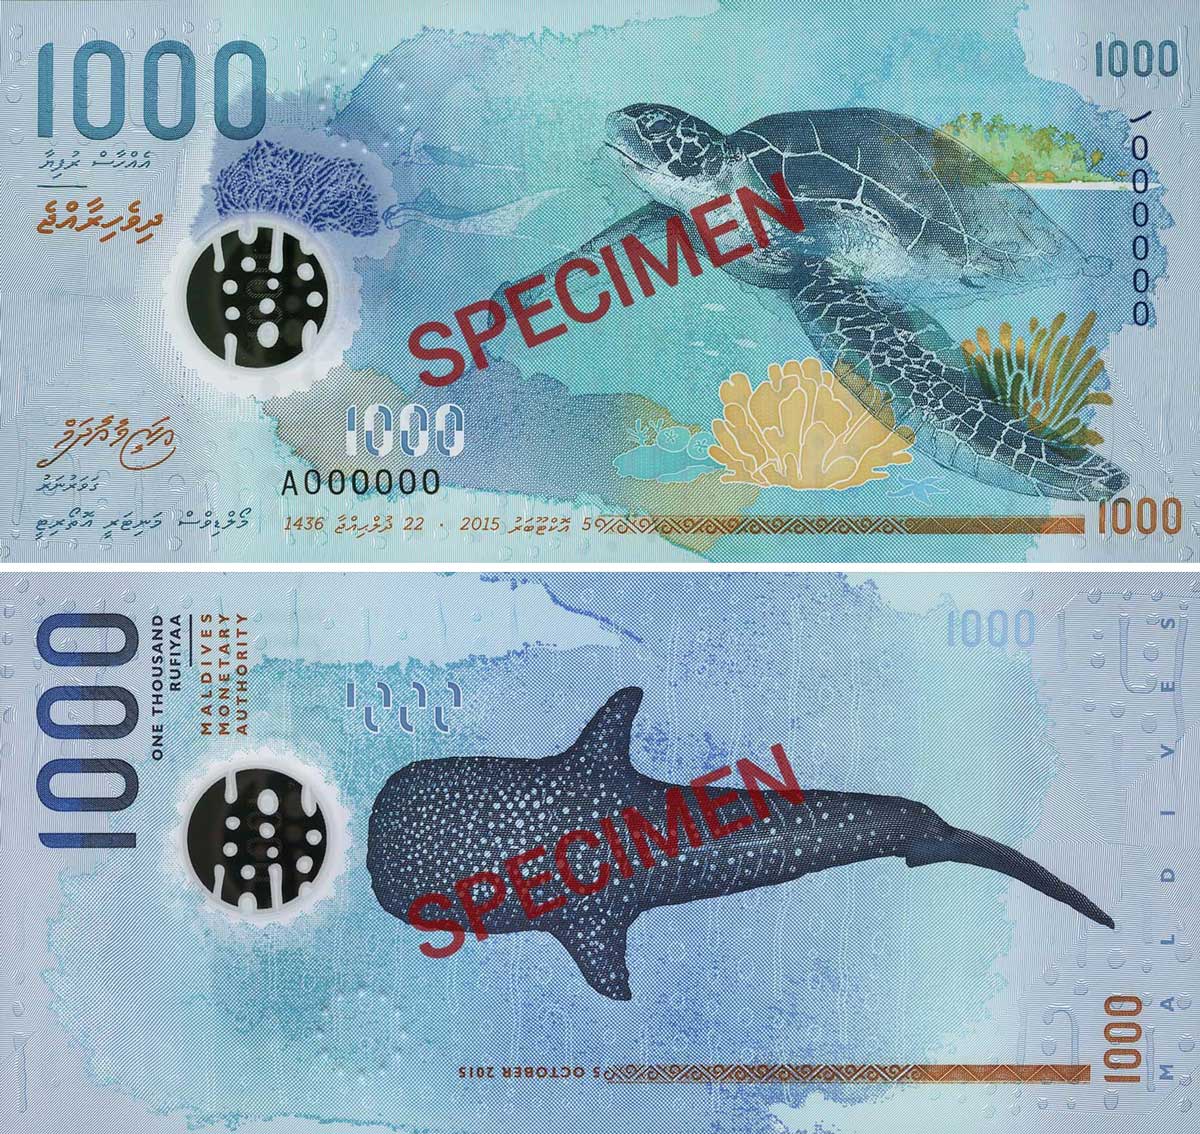 Maldives 1000 rufiyaa specimen